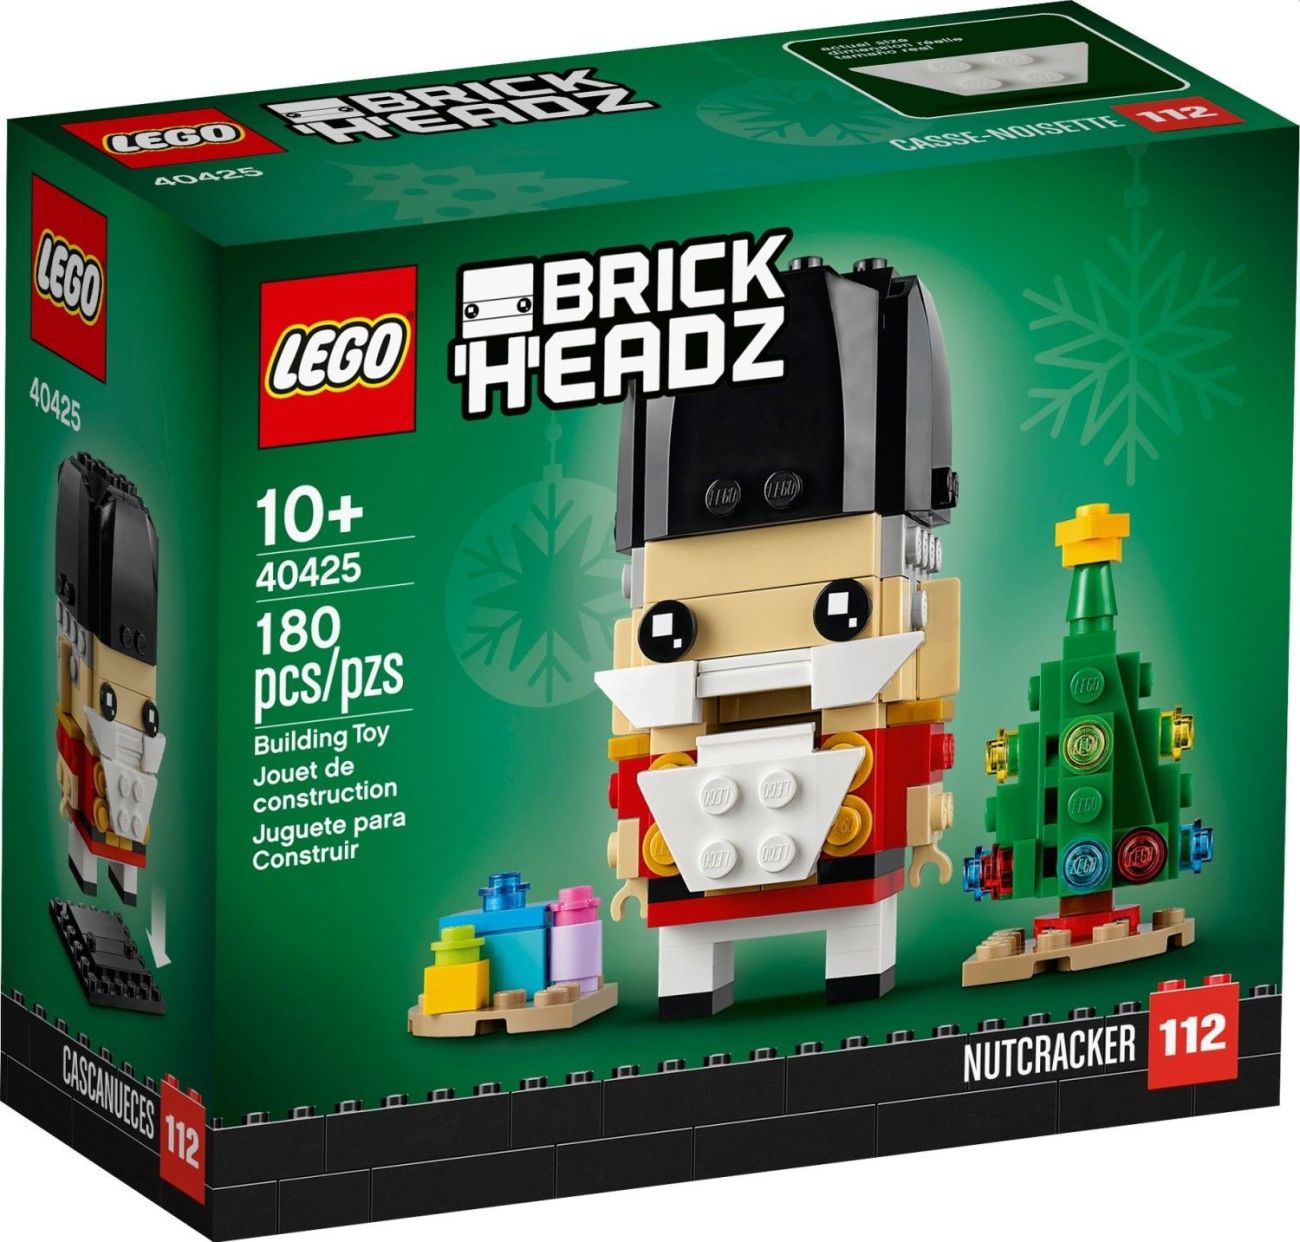 LEGO BrickHeadz Neuheiten 2020: weitere Bilder und Infos